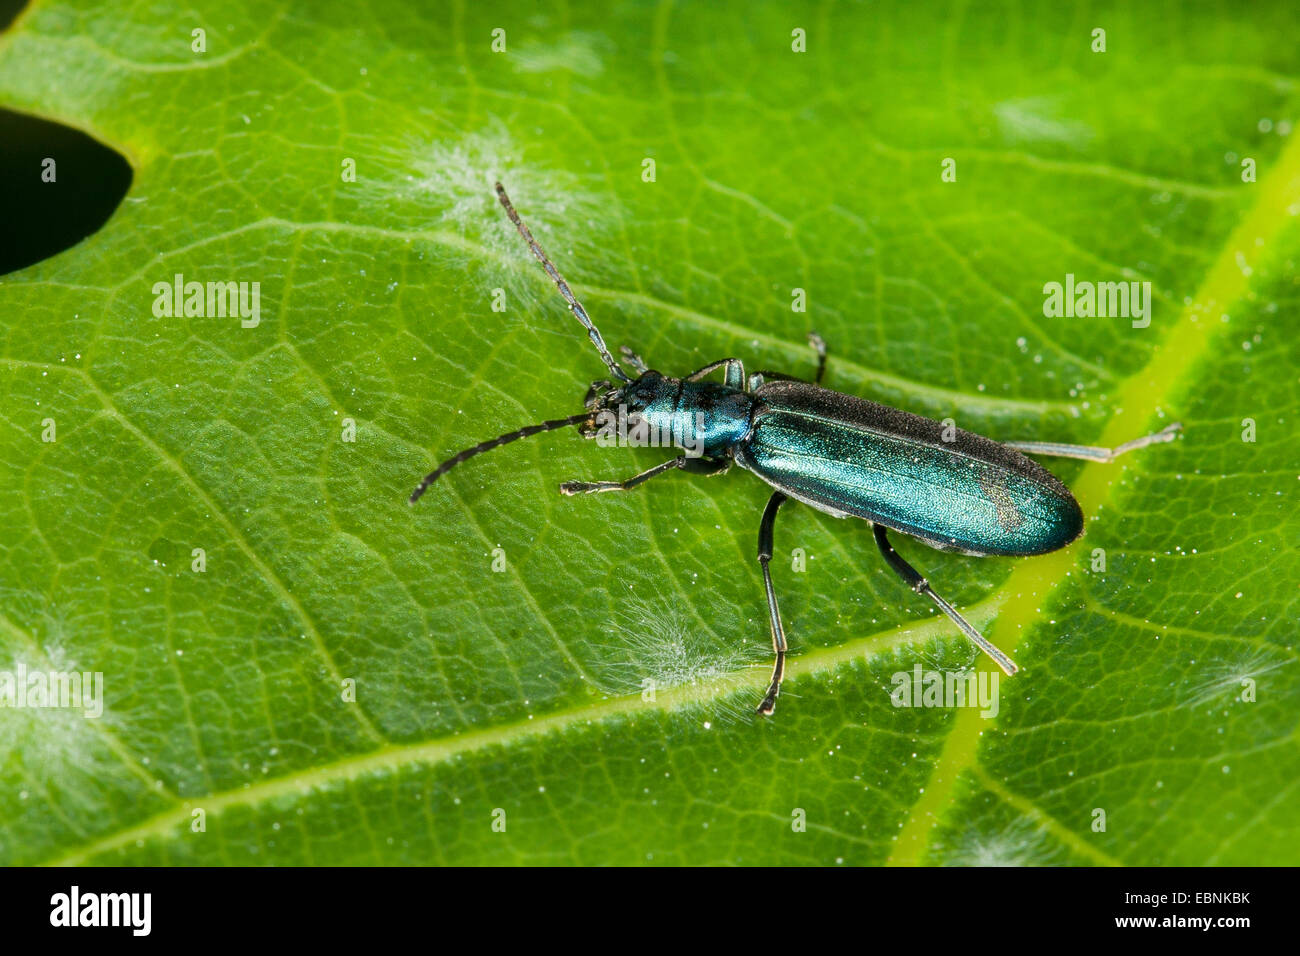 Allaitement Pollen Beetle (Ischnomera spec., Asclera spec., Ischnomera Ischnomera caerulea) oder cyanea, sur une feuille, Allemagne Banque D'Images